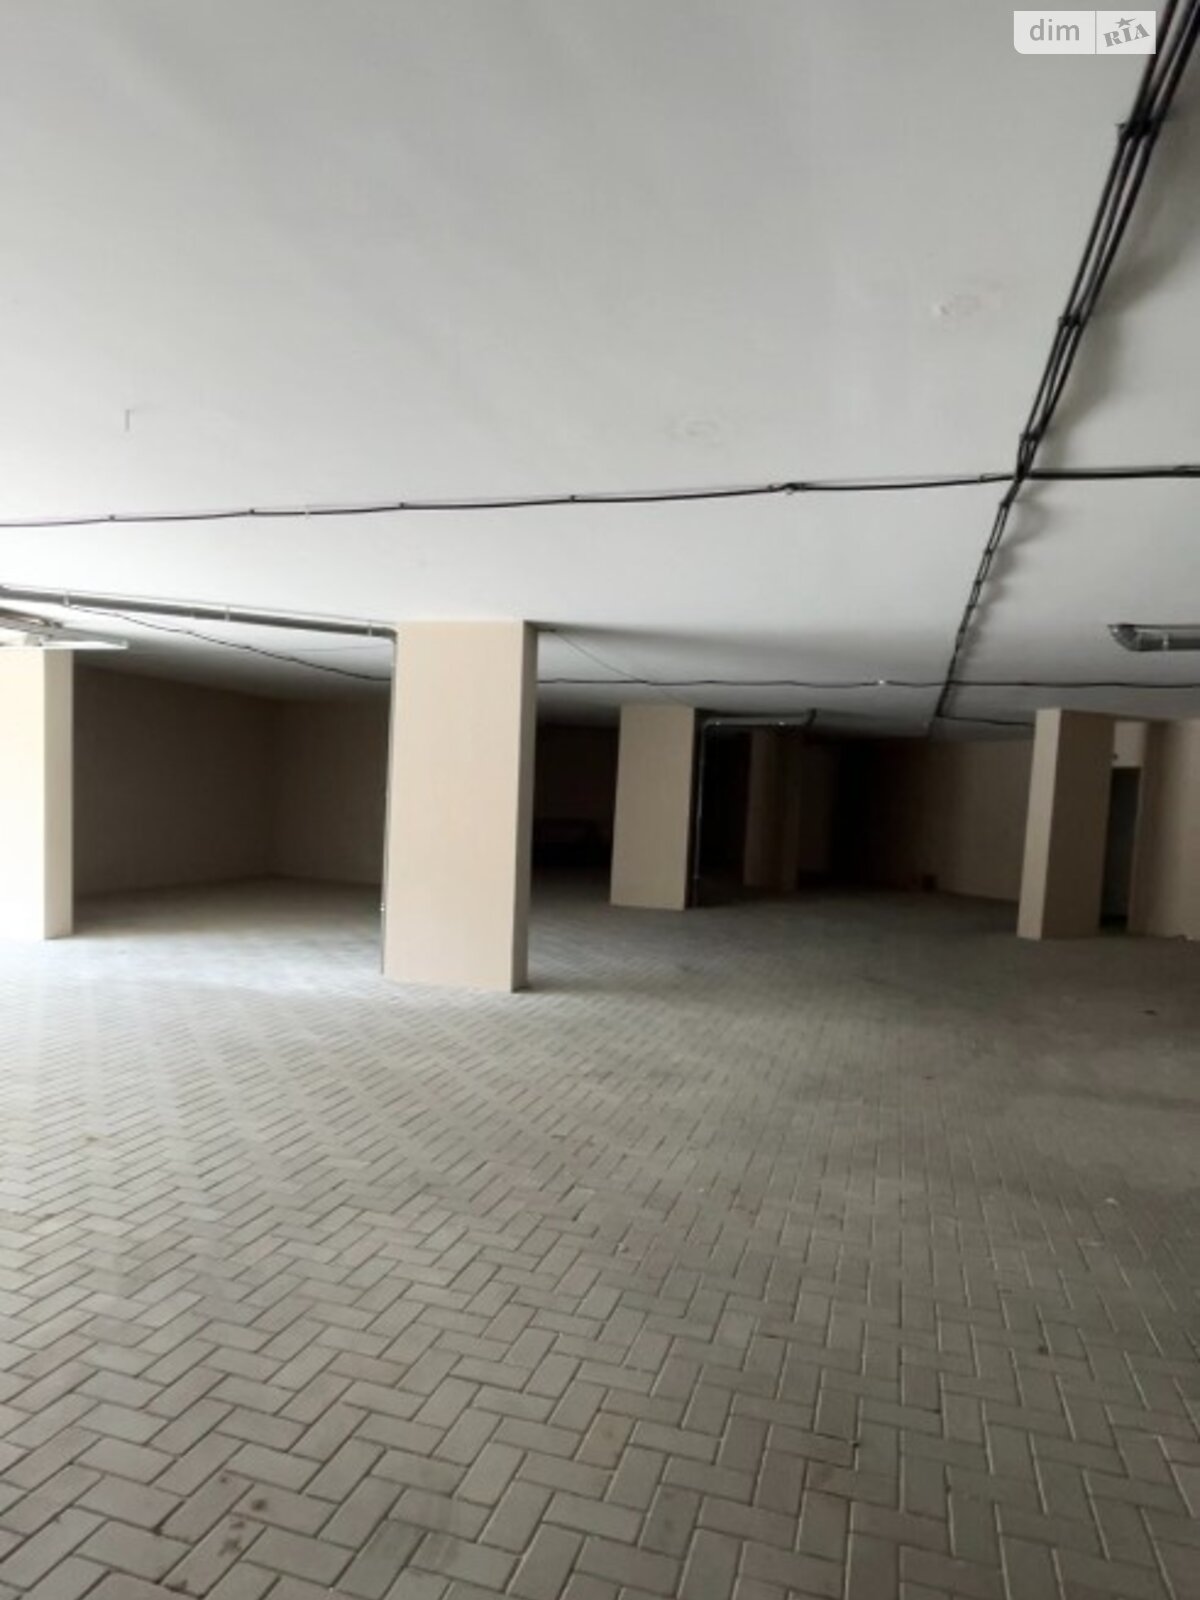 Место в подземном паркинге под легковое авто в Одессе, площадь 19.02 кв.м. фото 1